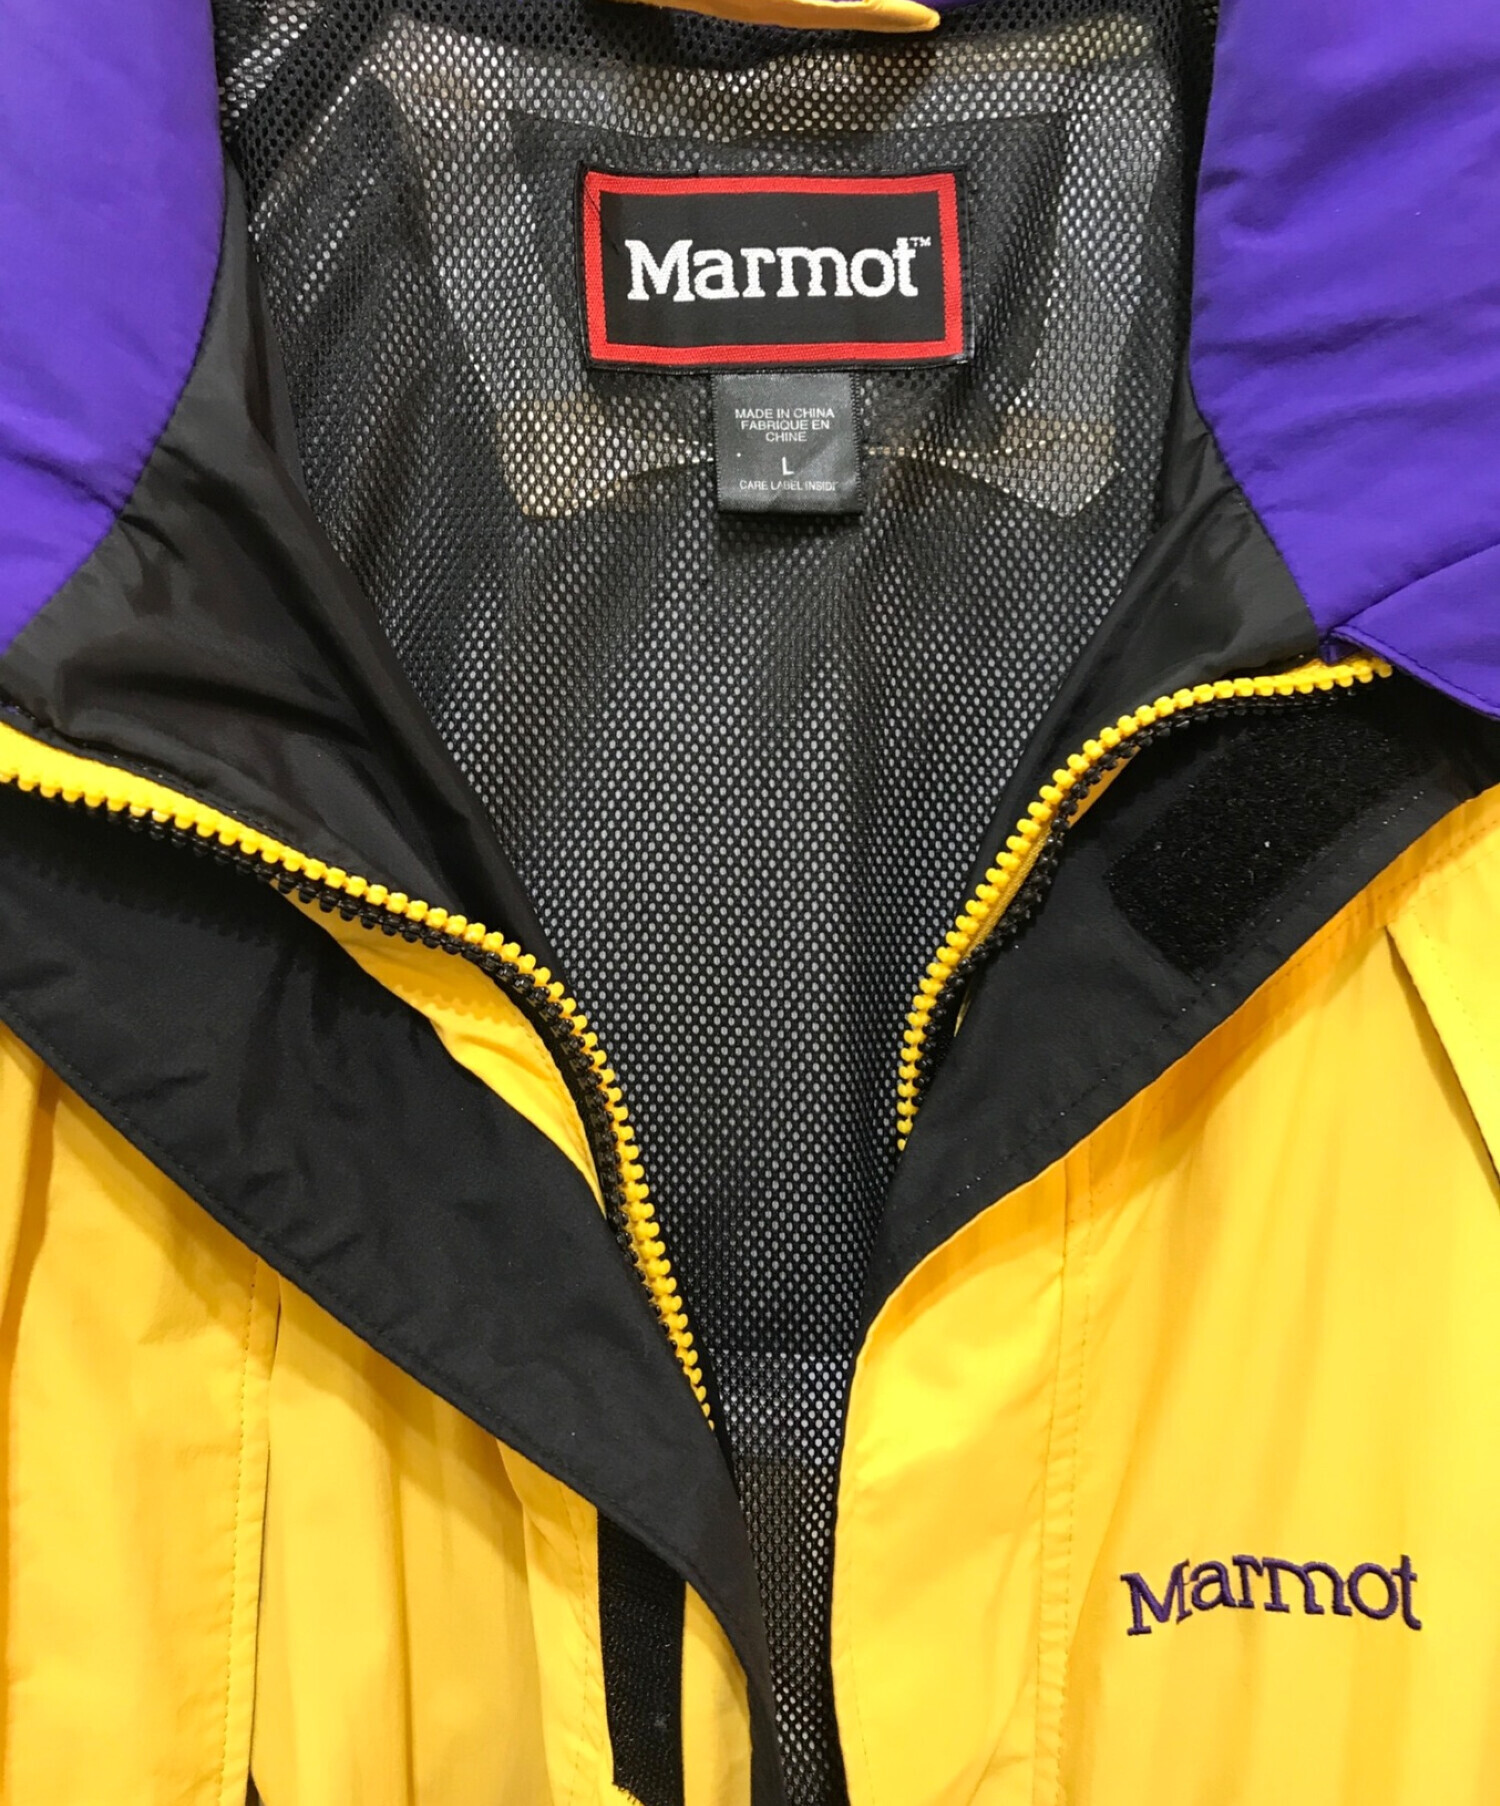 Marmot メンズ シェルジャケット Lサイズ